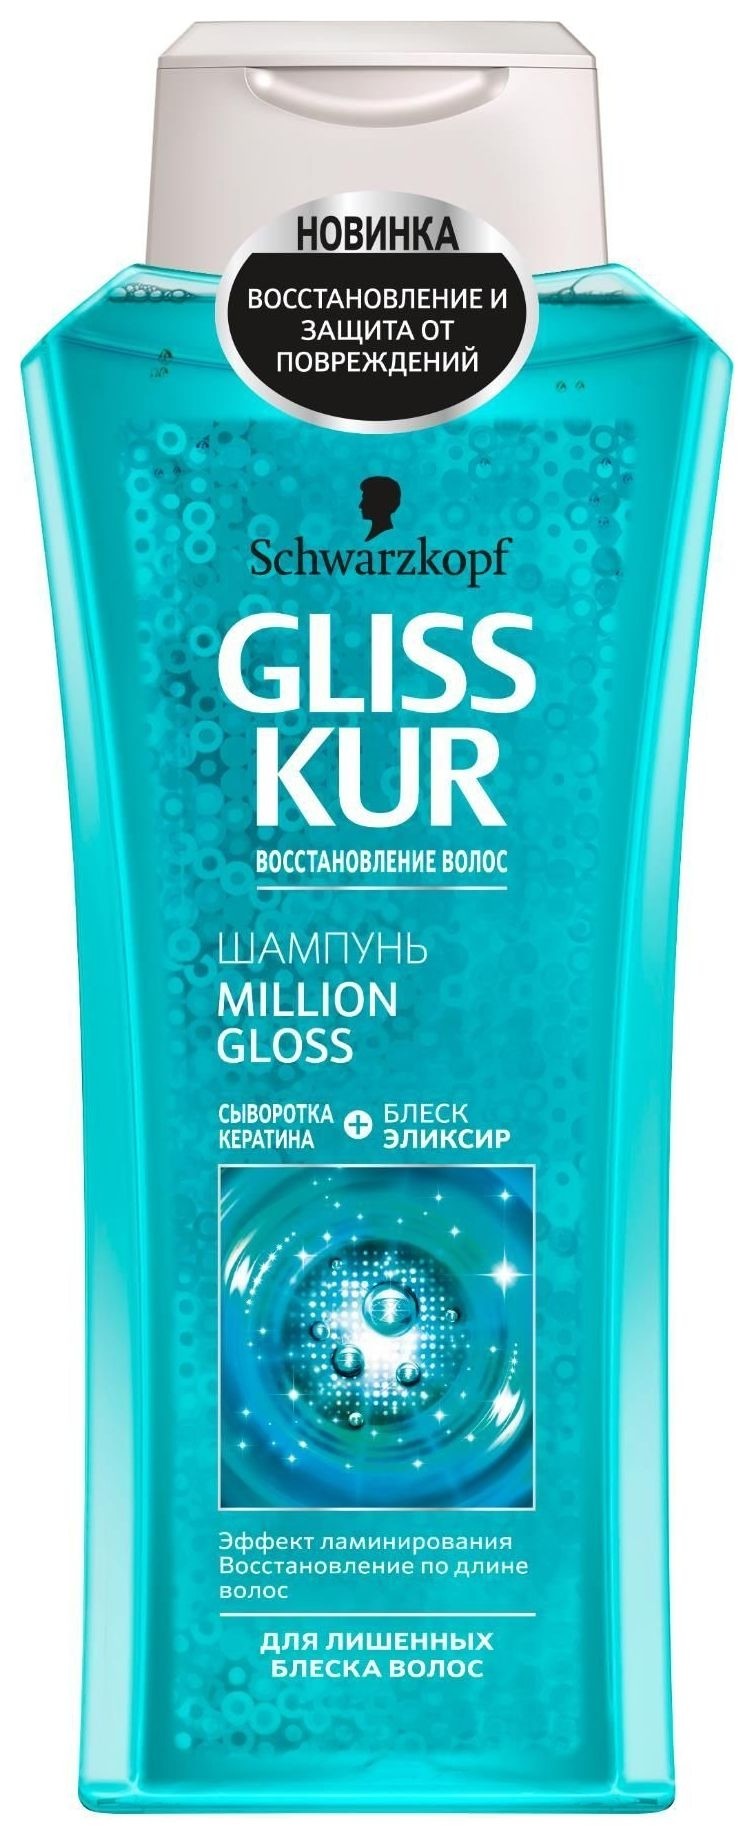 Шампунь для волос Million Gloss Gliss Kur